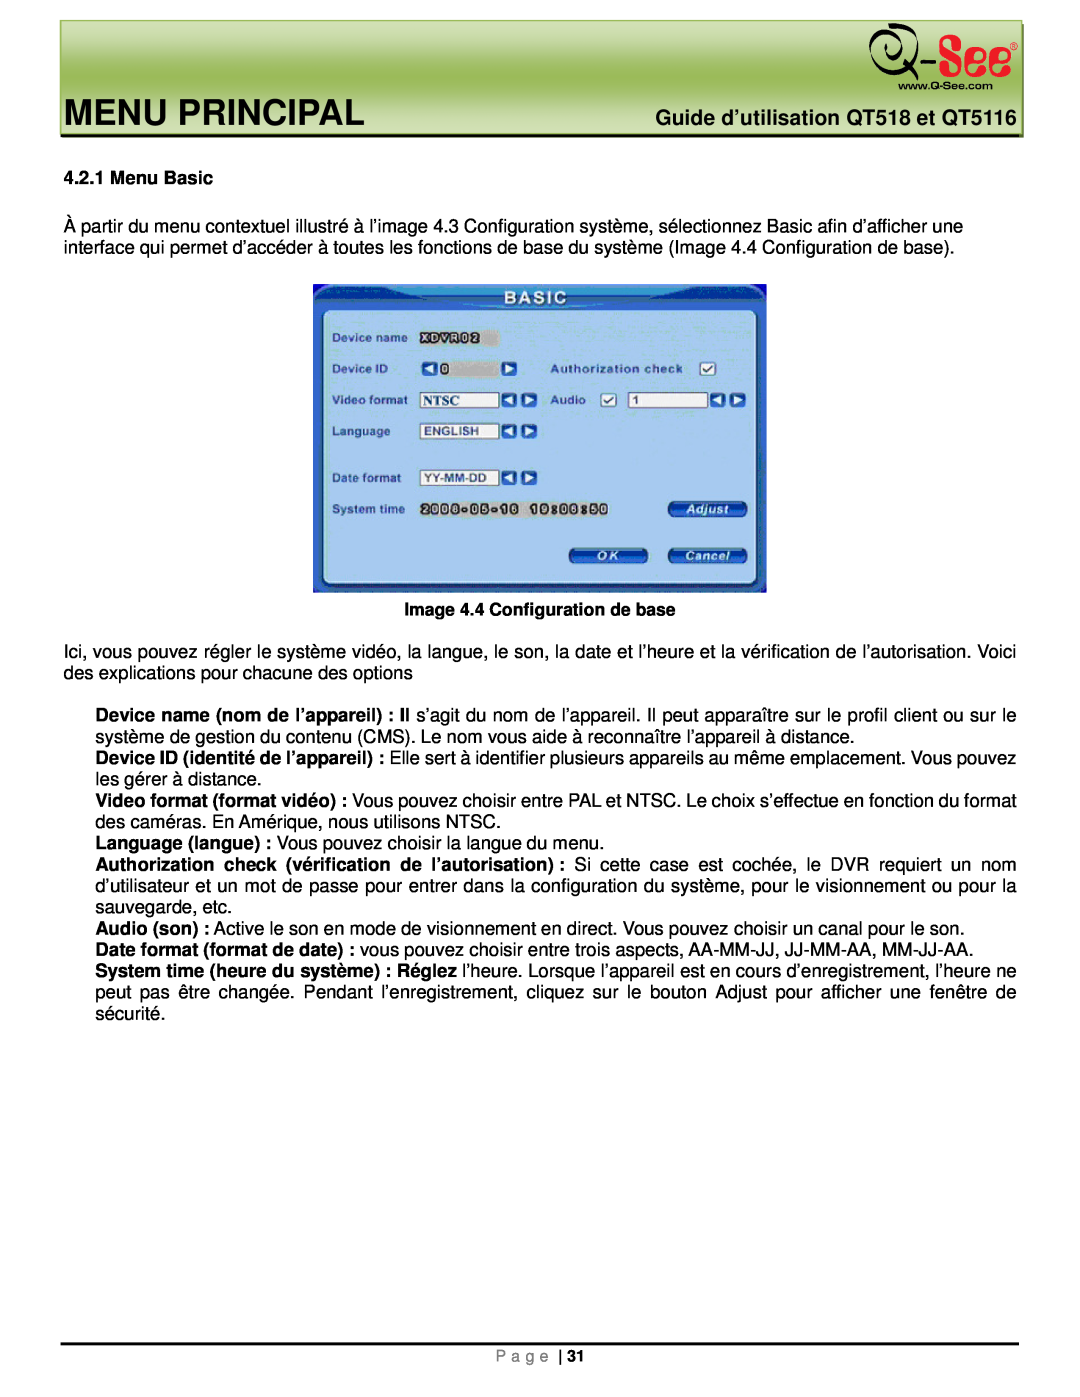 Q-See manual Menu Principal, Guide d’utilisation QT518 et QT5116, Menu Basic, Image 4.4 Configuration de base 